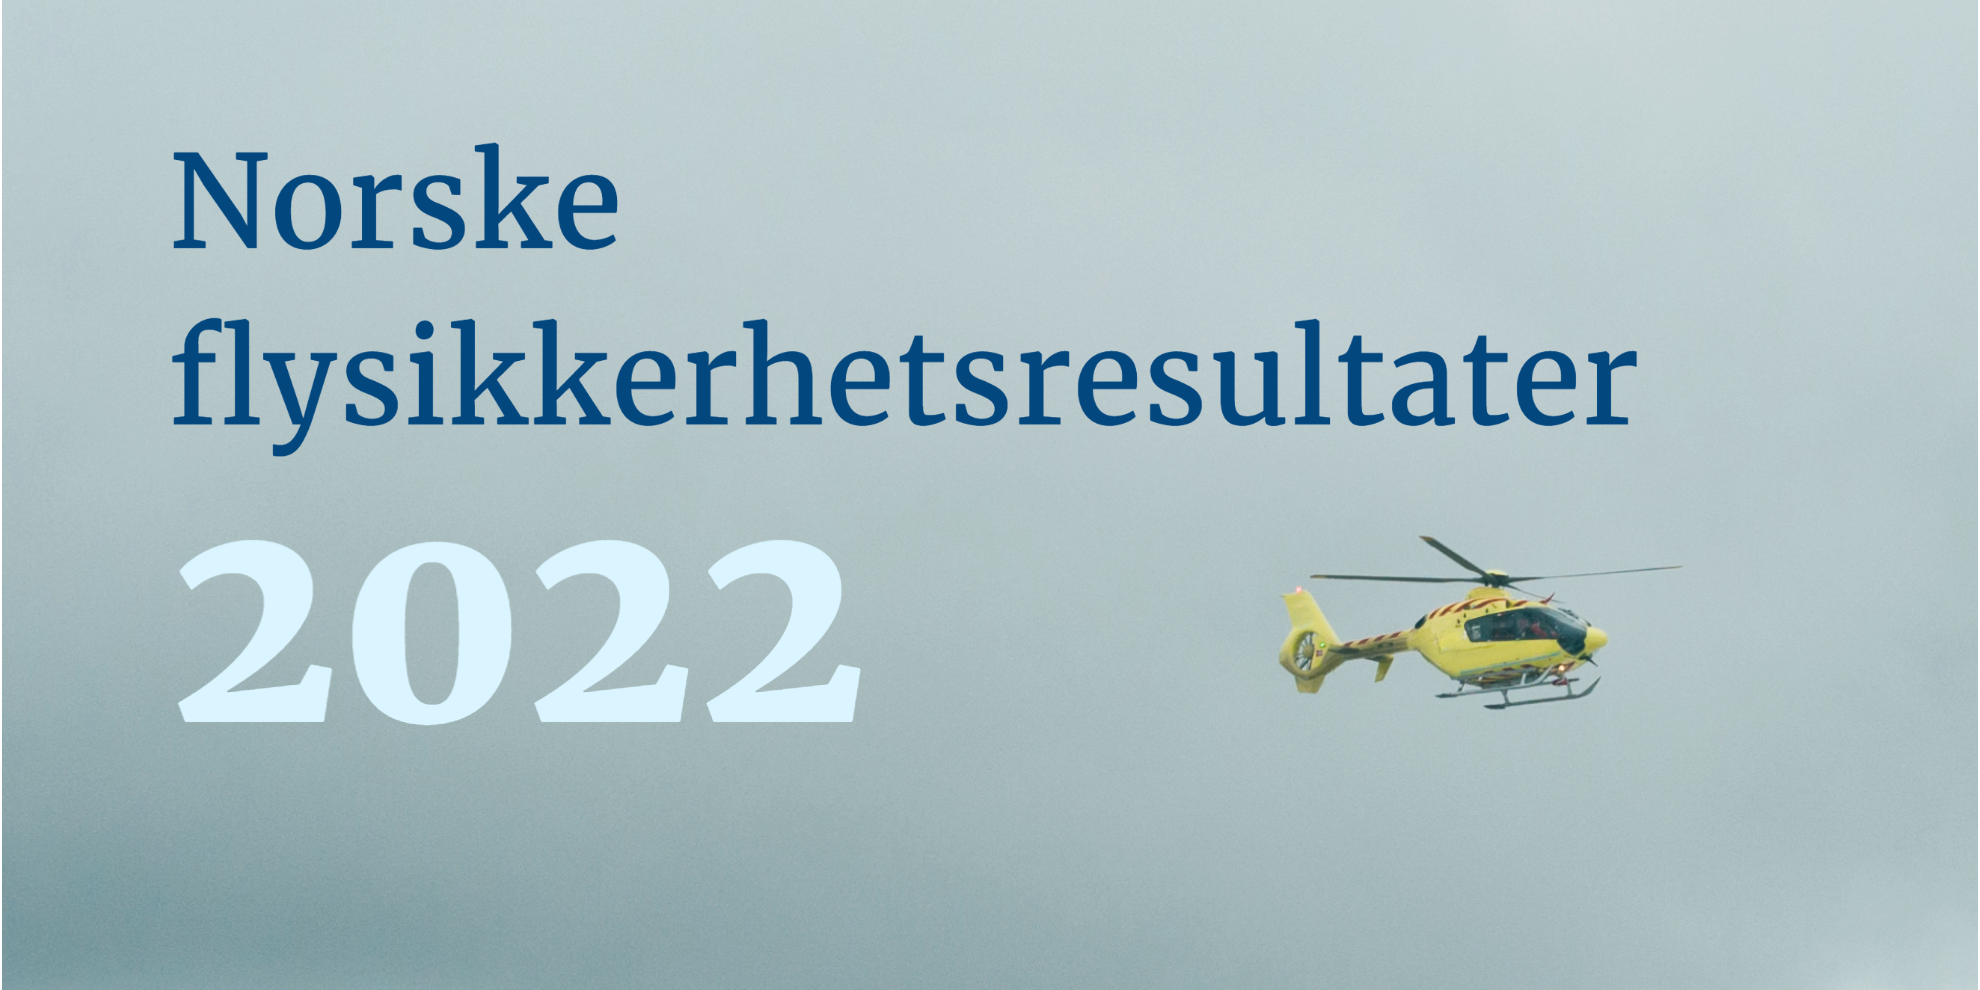 Norske flysikkerhetsresultater 2022